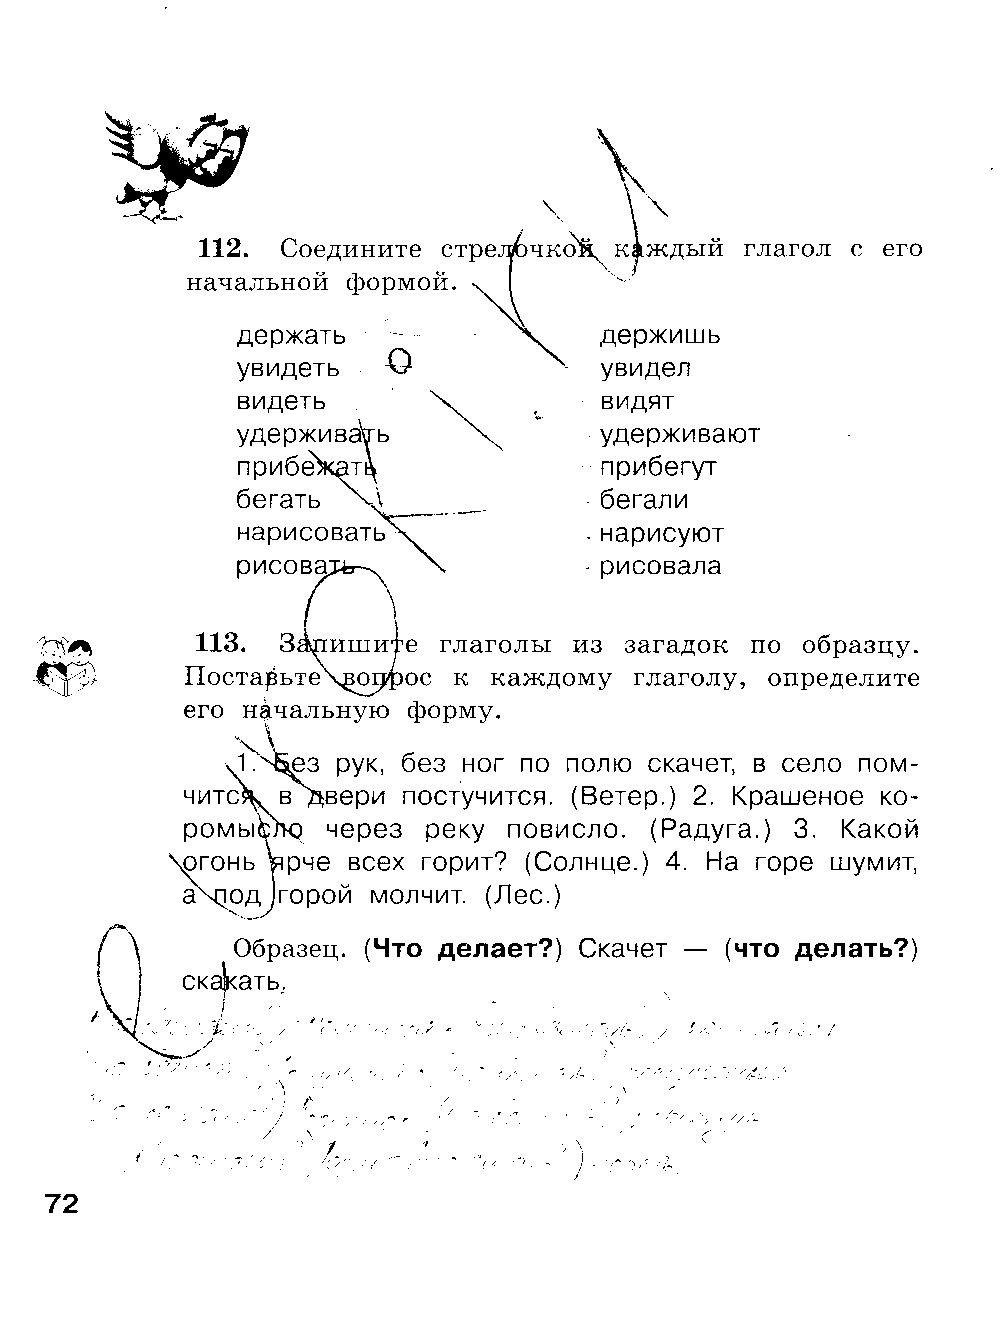 ГДЗ Русский язык 3 класс - стр. 72